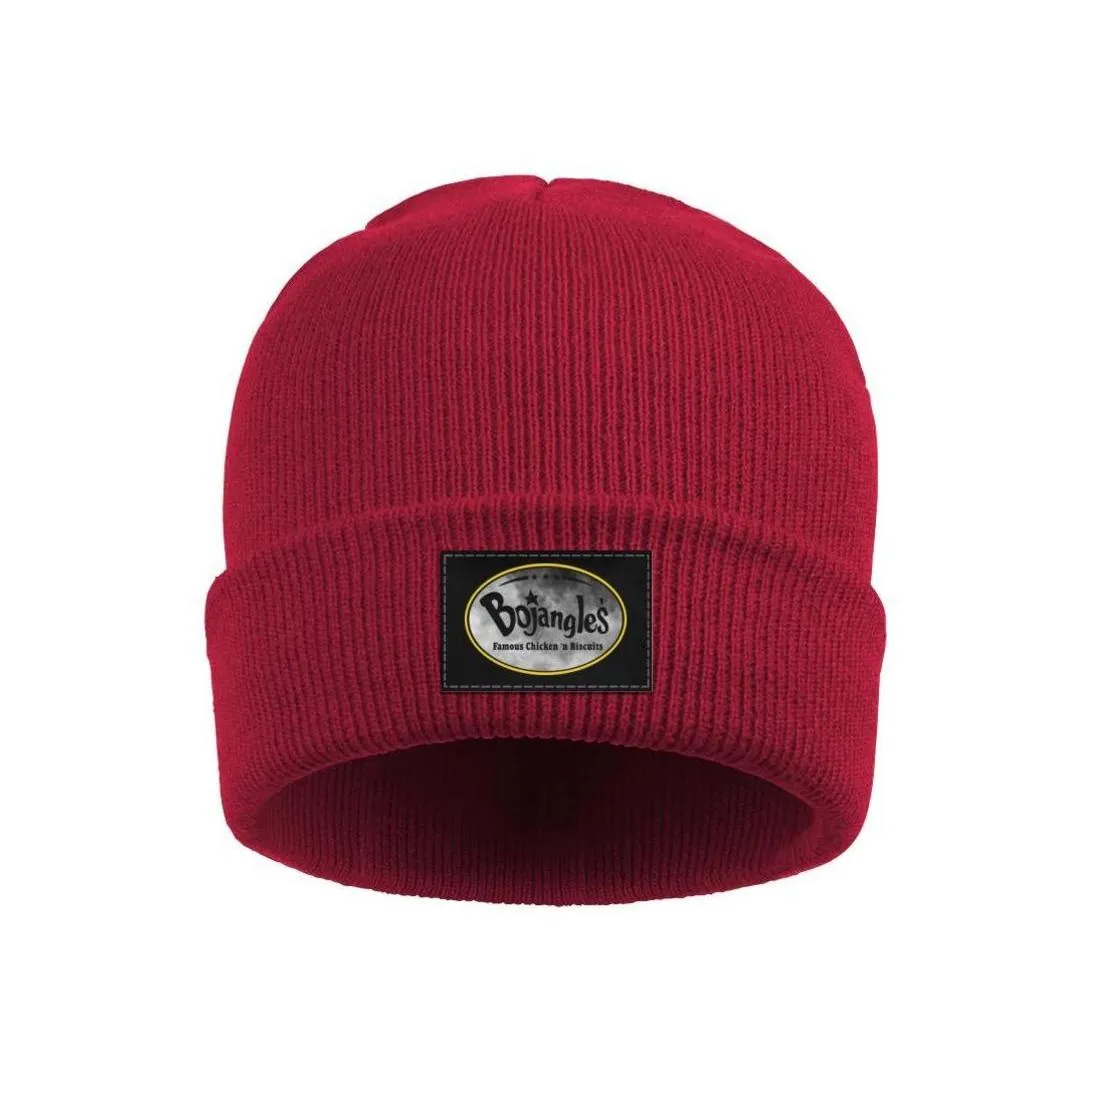 Moda bojangles039 słynne frytki kurczowe frytki zimowe ciepłe czapki czapki czapki vintage różowy rak piersi Old American Flag Cam4446977